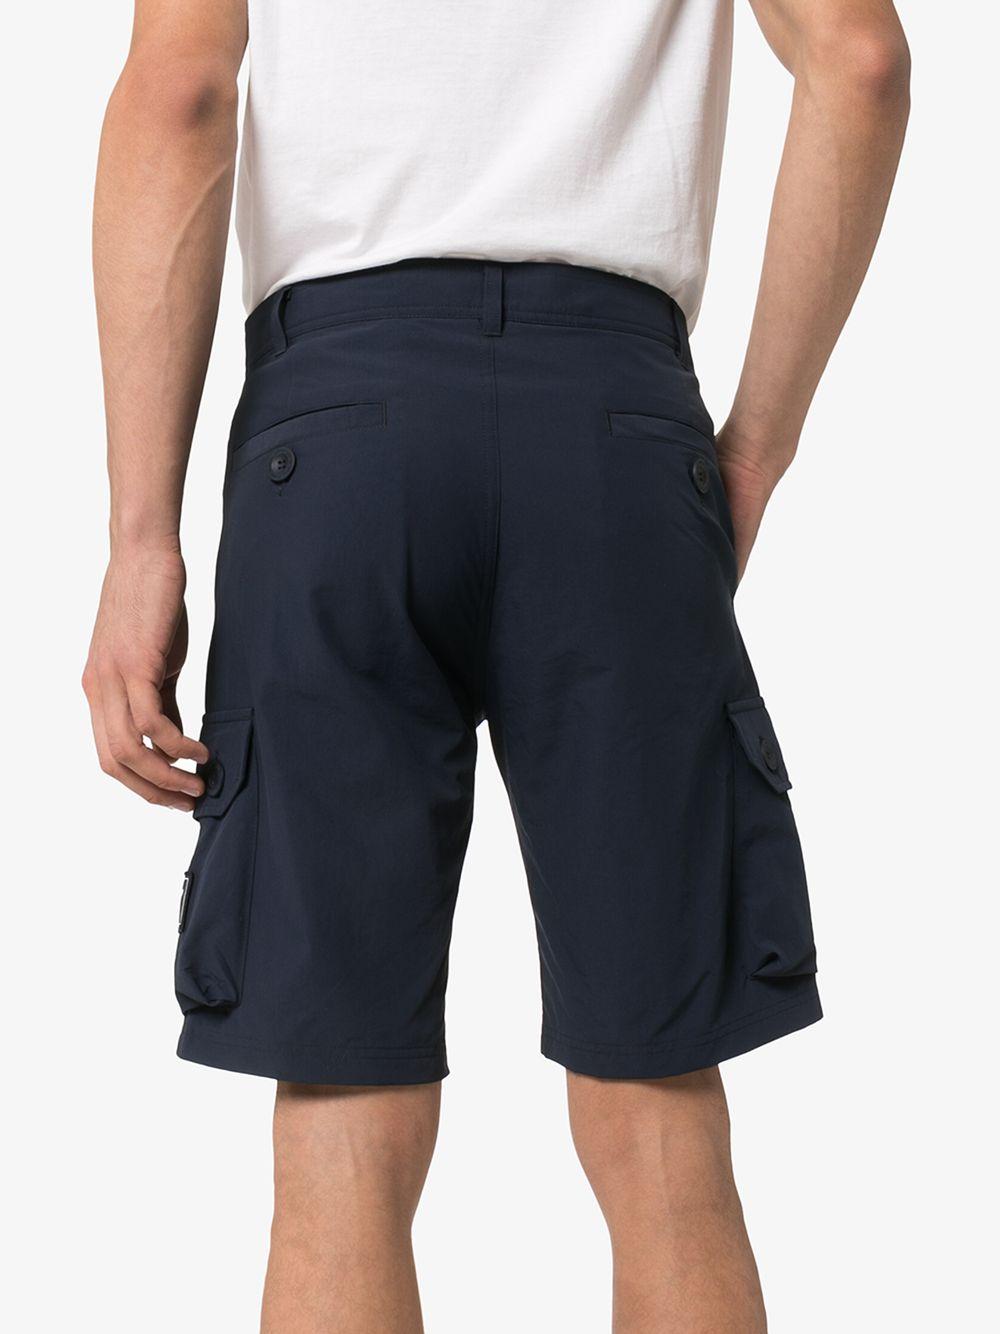 adidas Spezial Aldwych Cargo Shorts in Blue for Men - Lyst